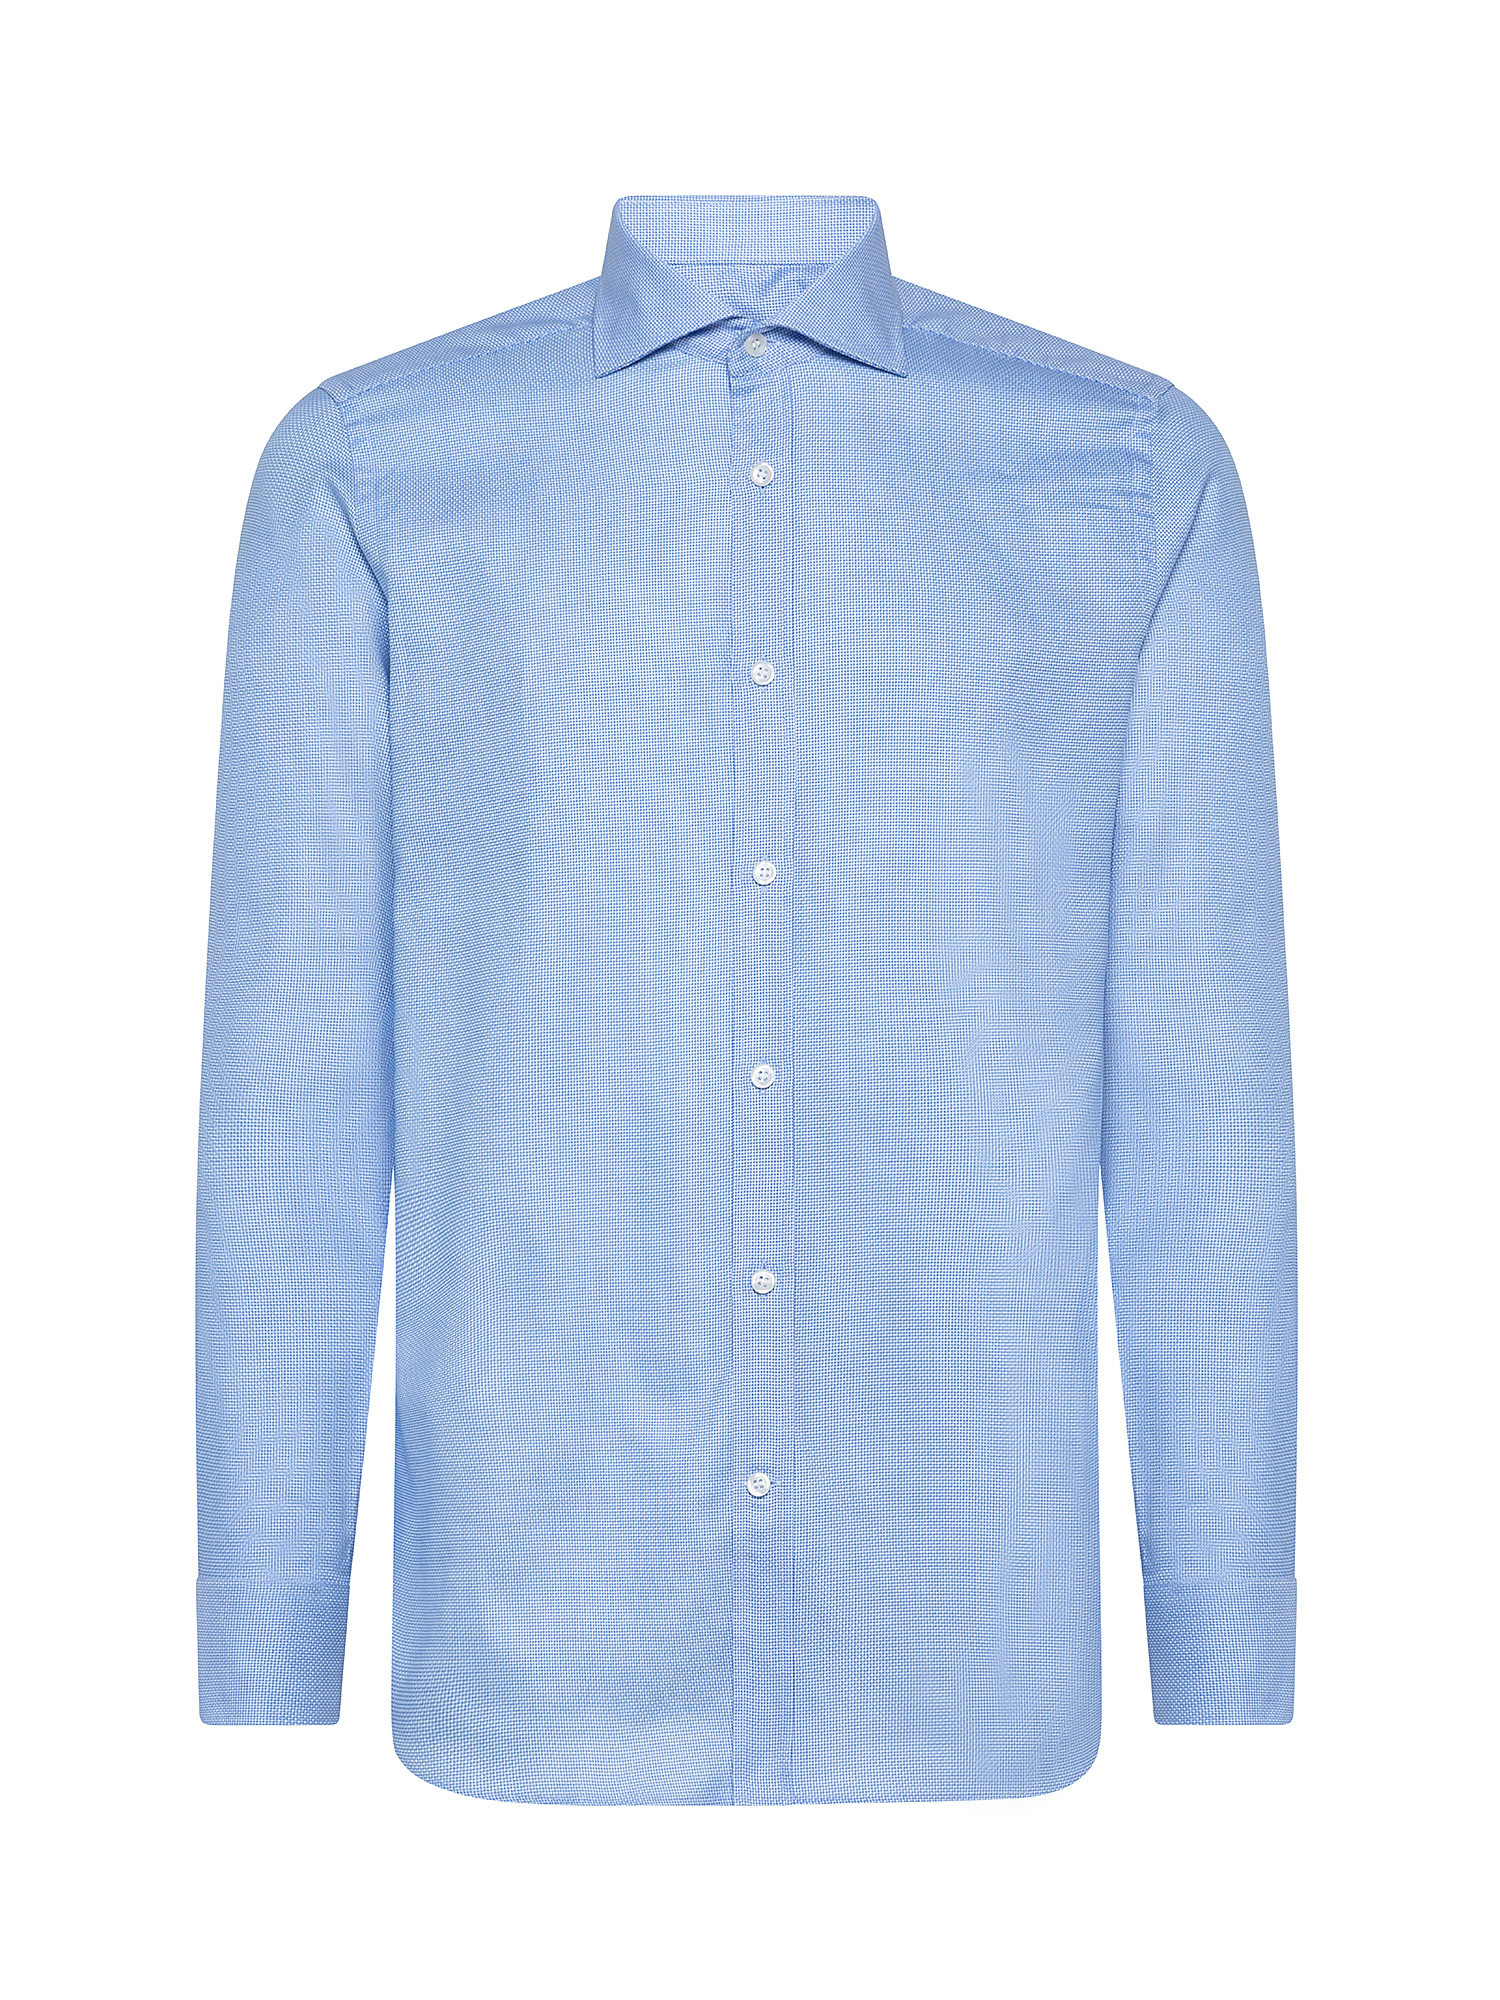 Camicia slim fit in cotone doppio ritorto, Azzurro, large image number 0